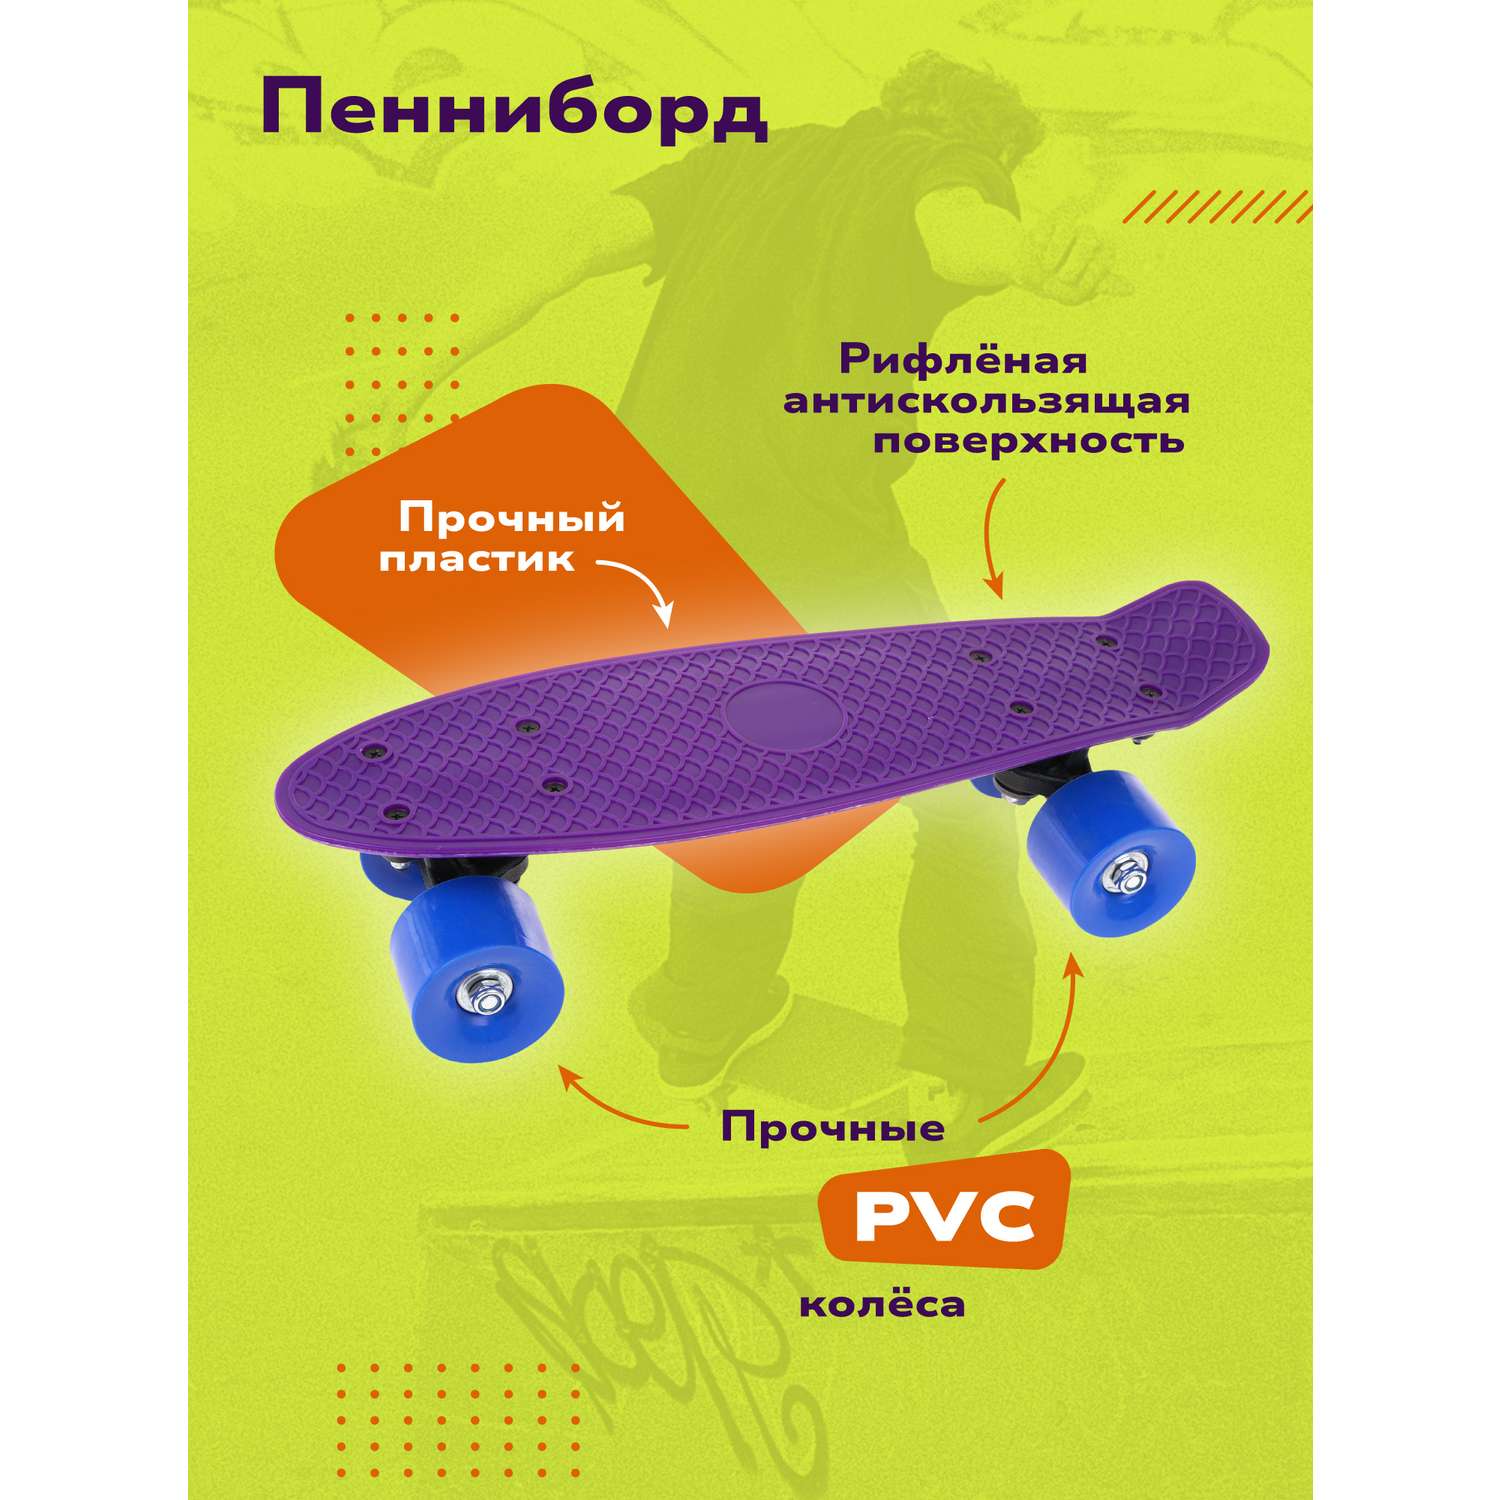 Скейтборд Наша Игрушка пенниборд пластик 41x12 см с большими PVC колесами. Фиолетовый - фото 1